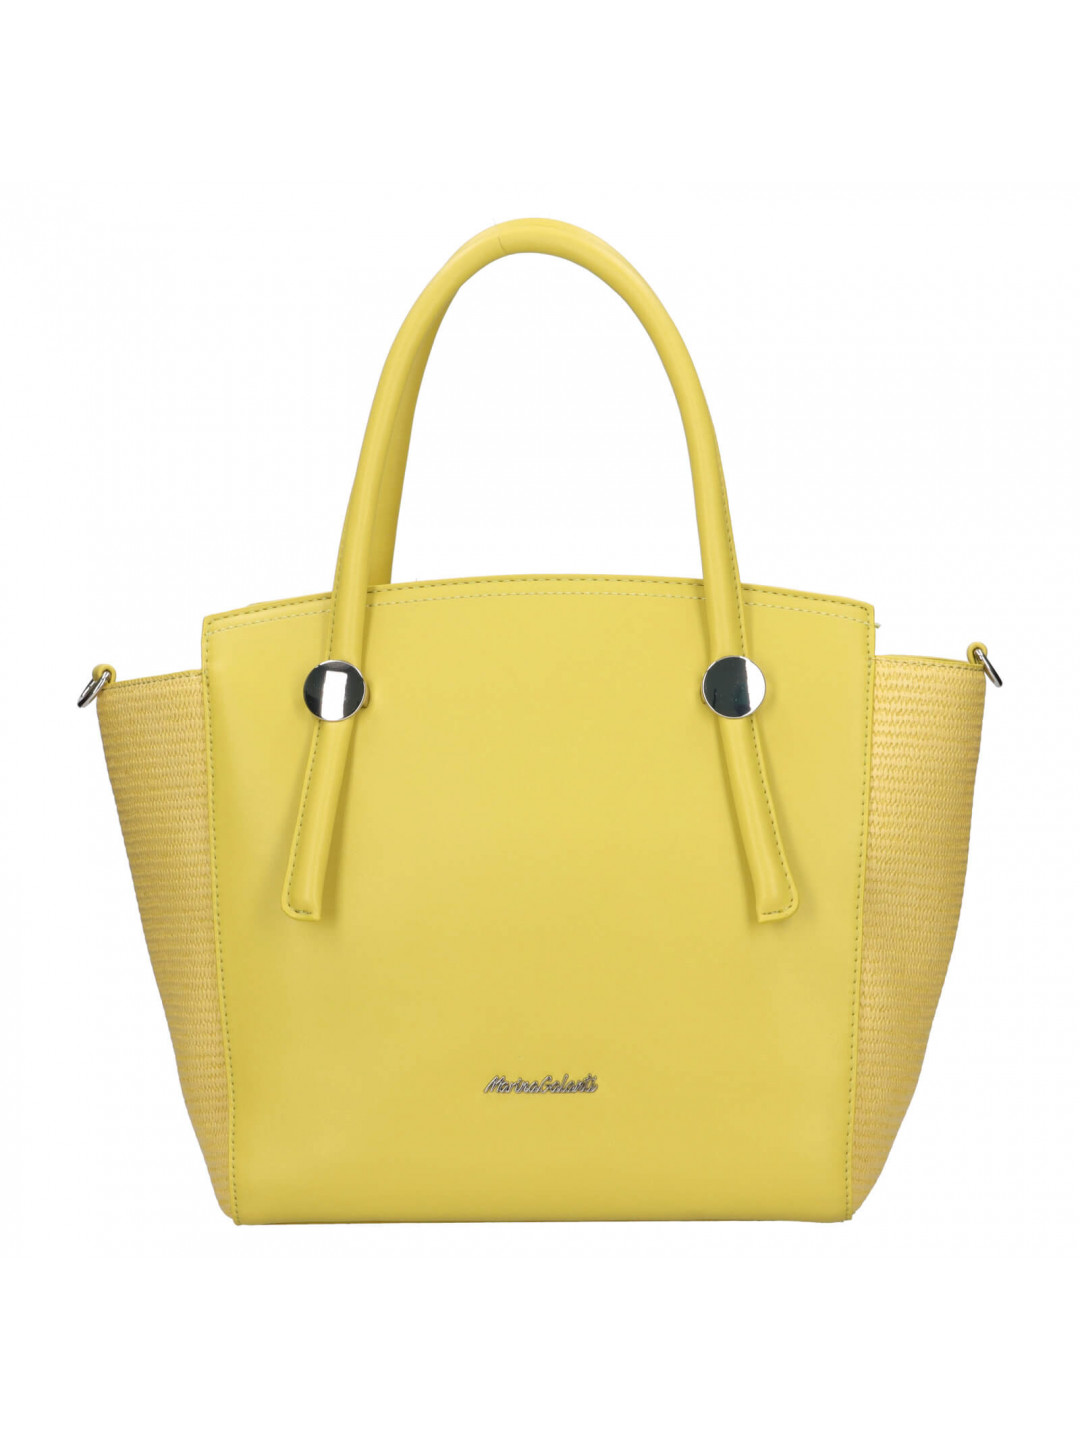 Dámská kabelka Marina Galanti Pia – žlutá